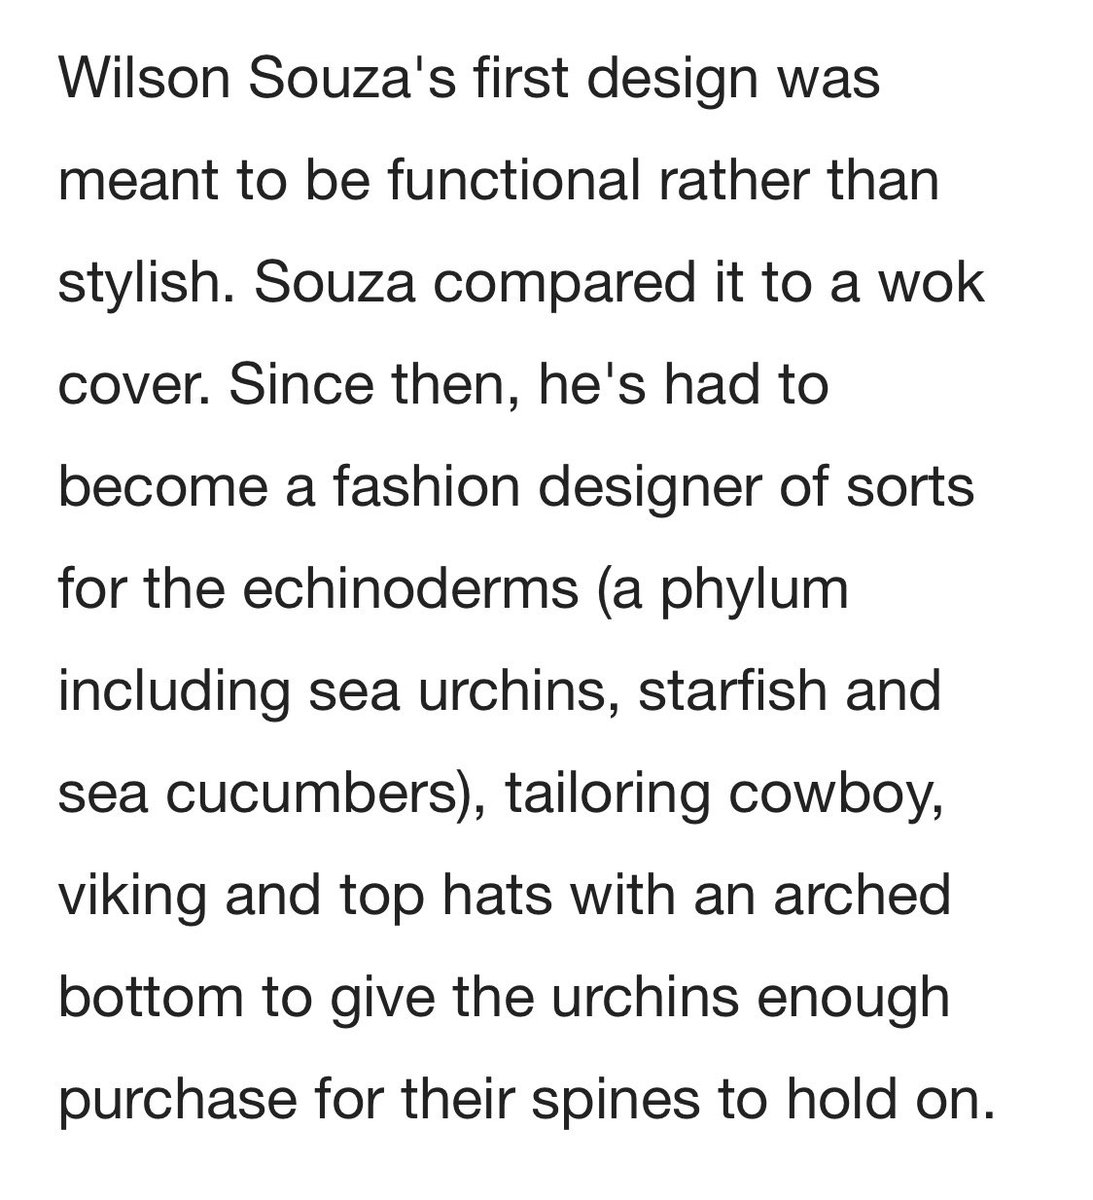 Wilson Souza is the hero we need in 2020